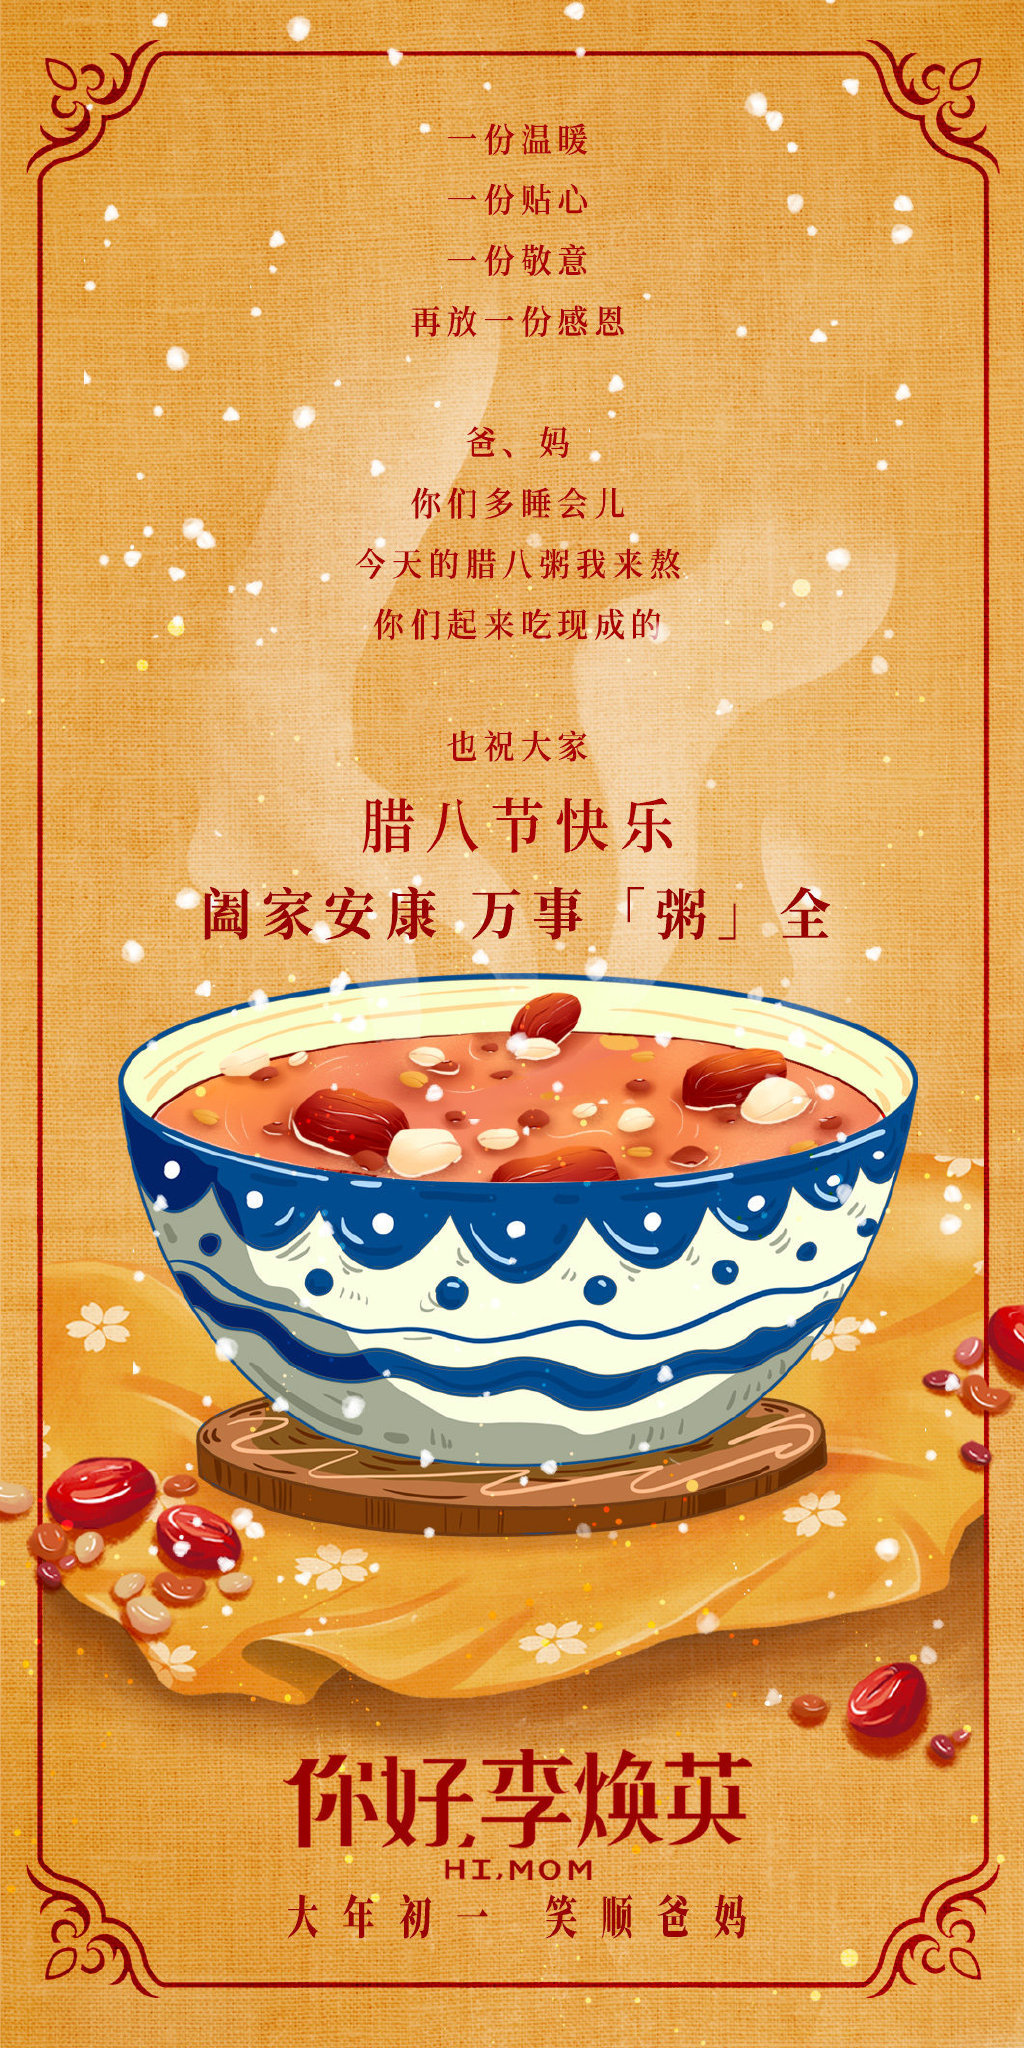 for mac download Ni Hao, Li Huan Ying